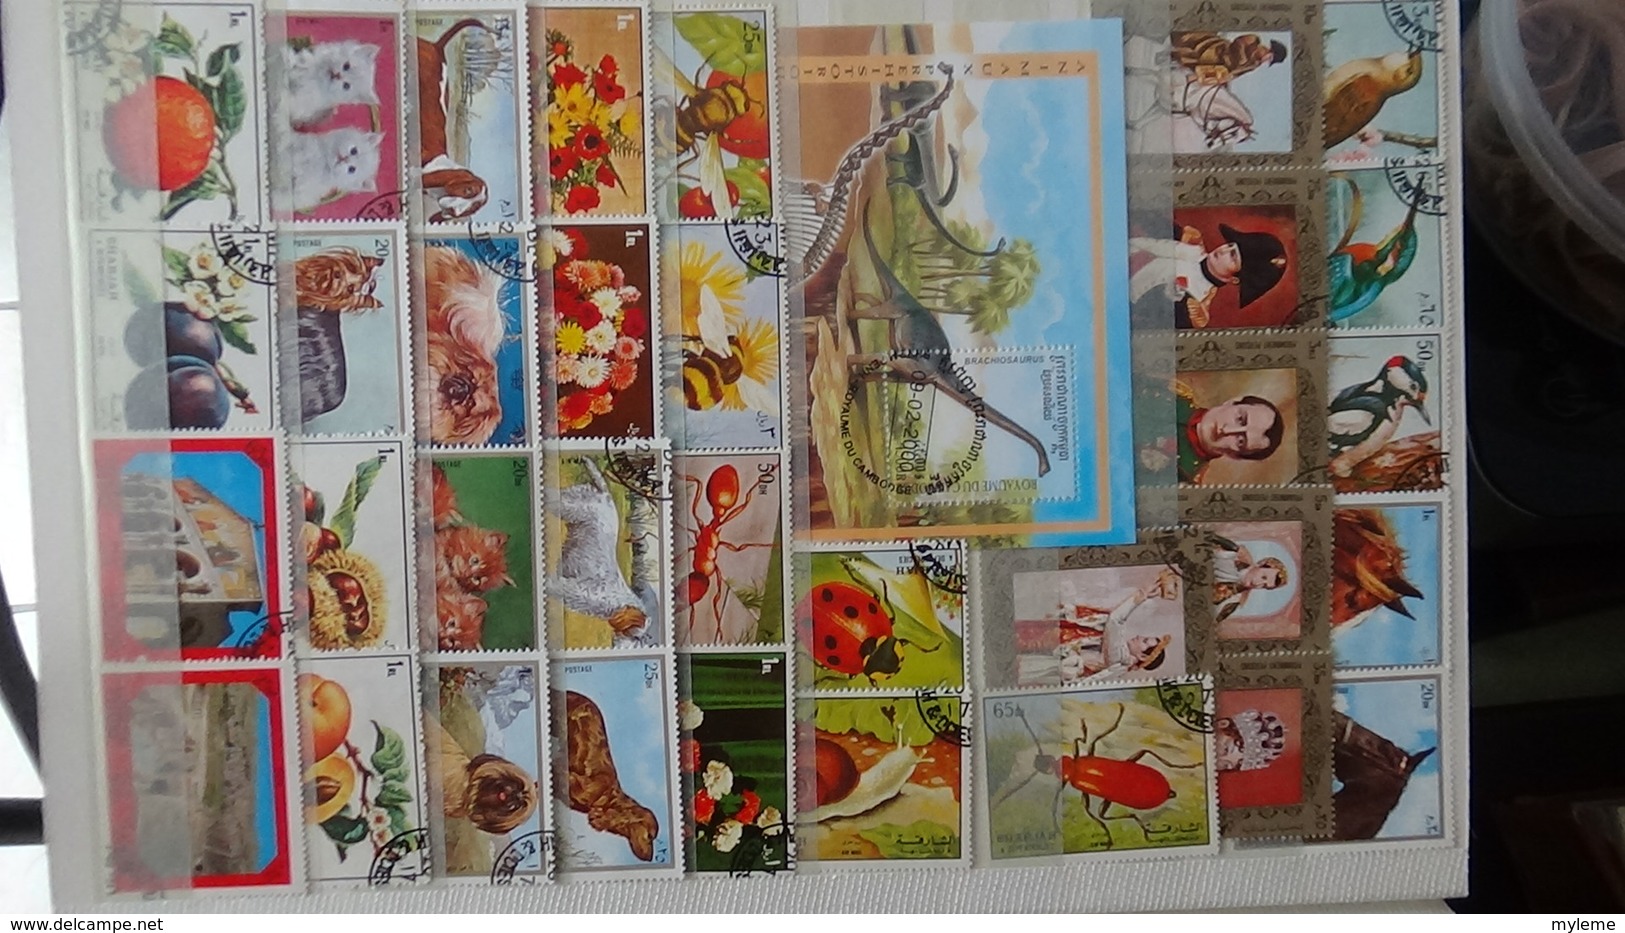 Des centaines de timbres et blocs oblitérés du monde. Idéal pour comléter ses thématiques avions, JO, oiseaux ...